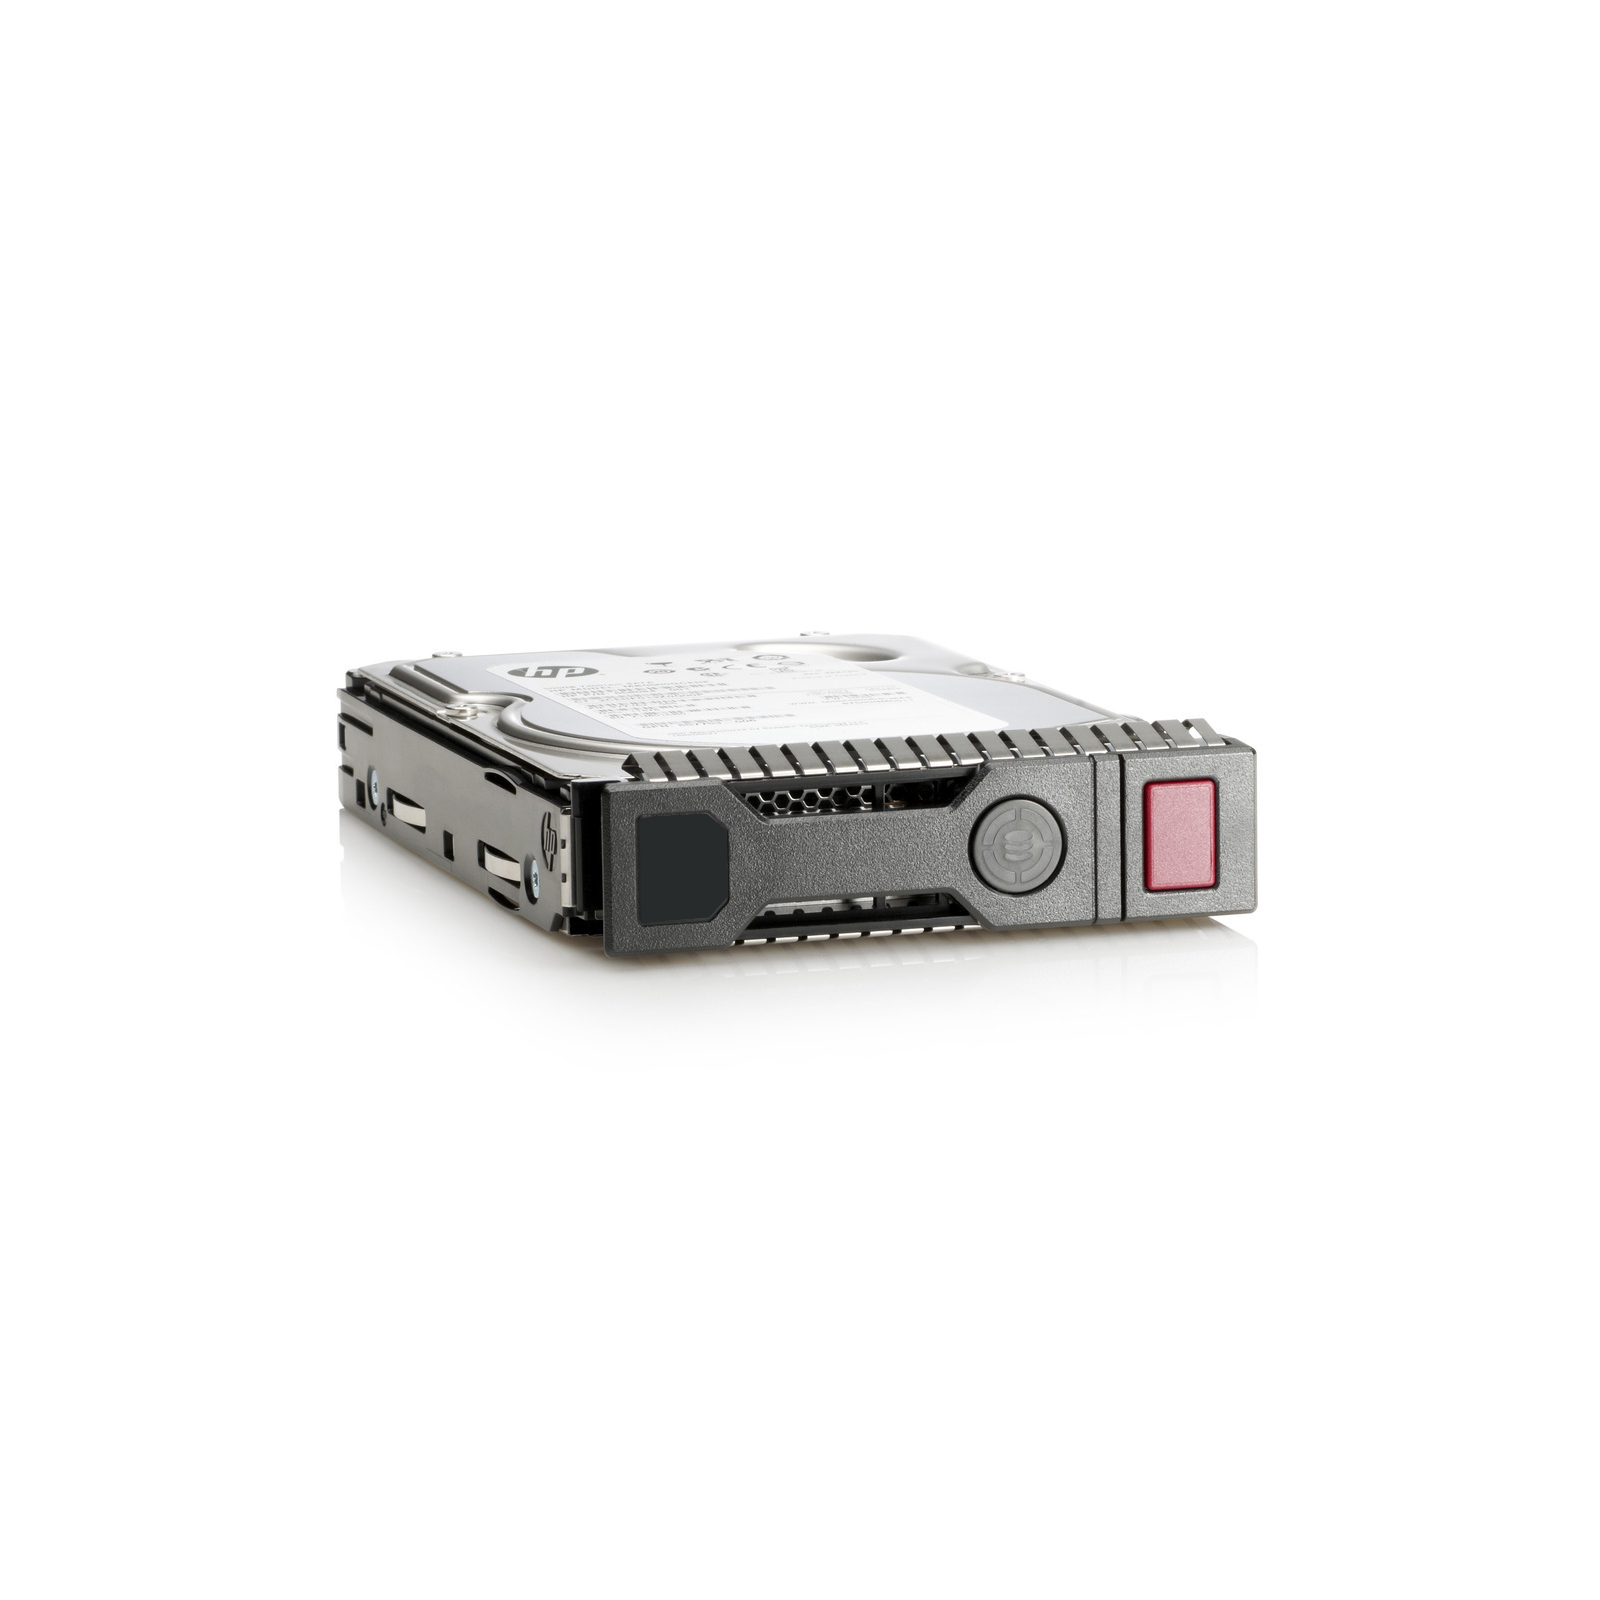 Жесткий диск для сервера HP 785067-B21